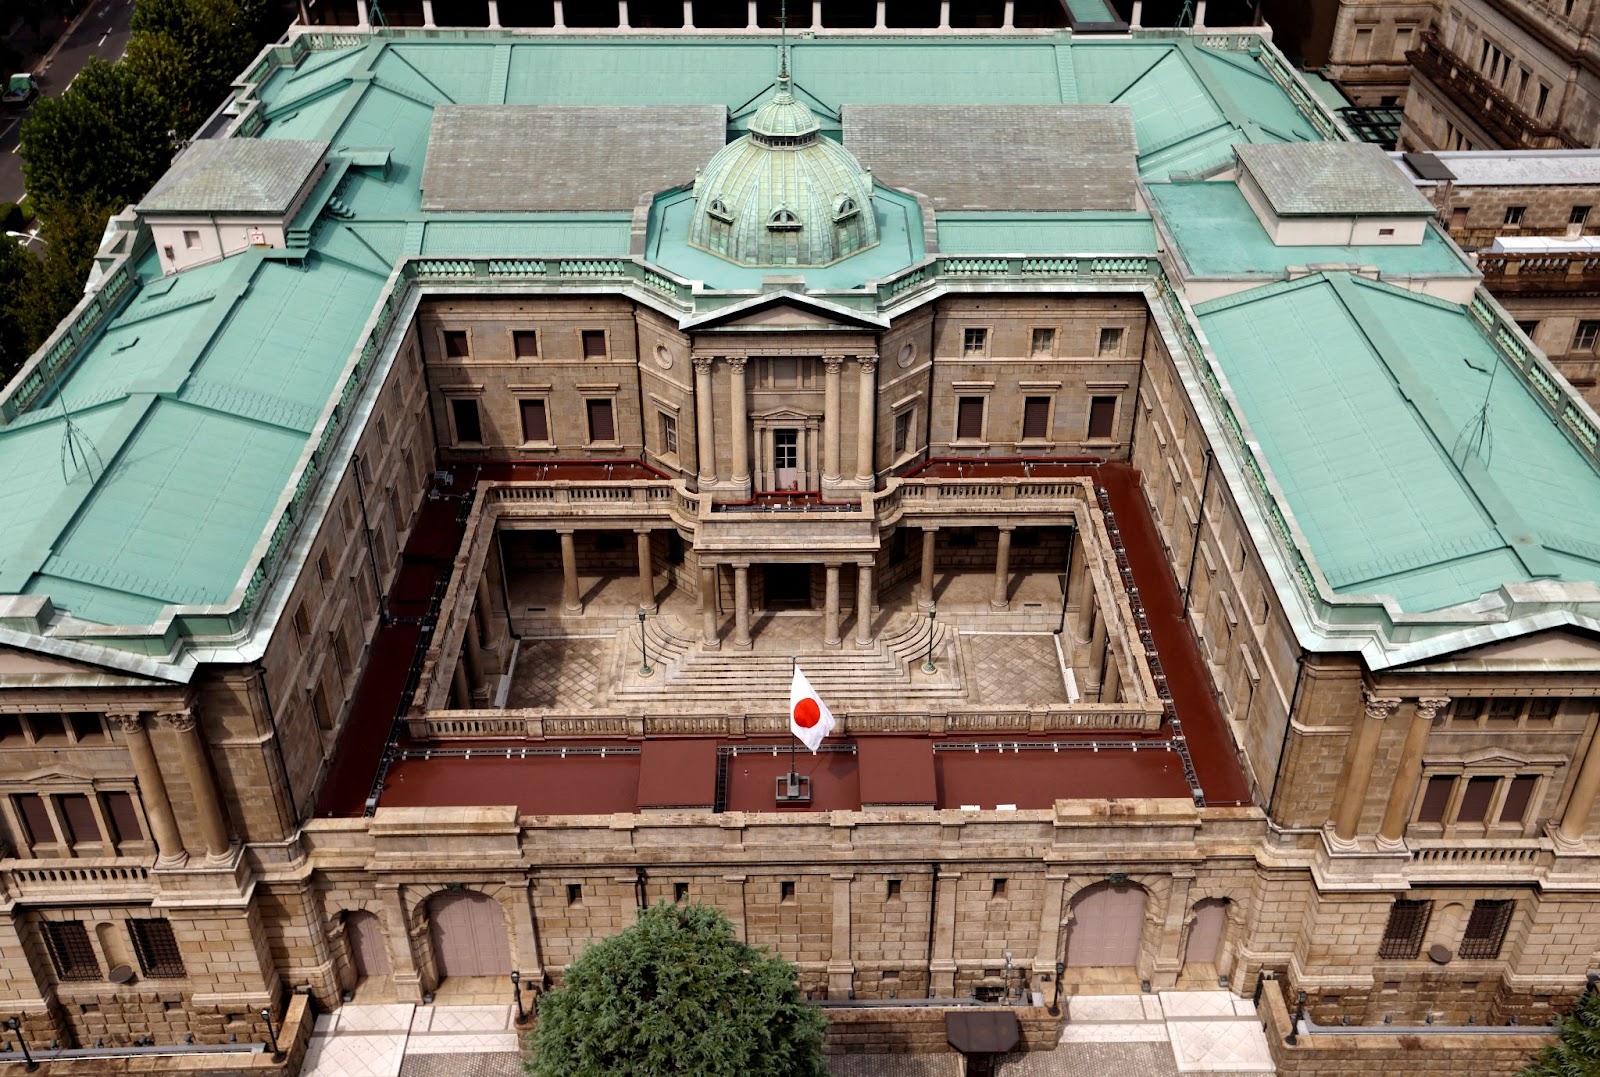 Bank of Japan (BoJ) - Japan
